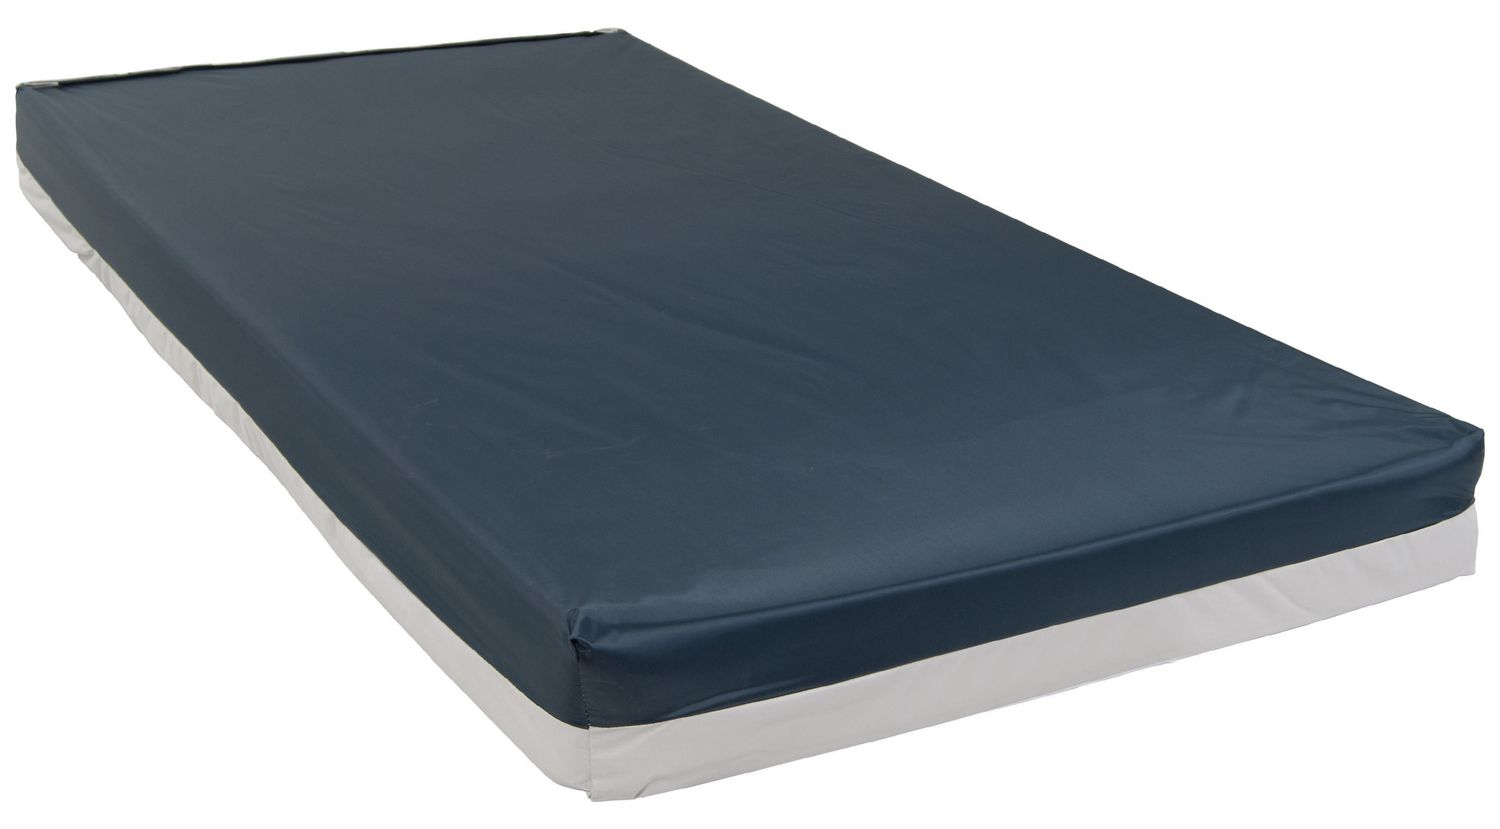 solid foam mattress for sale